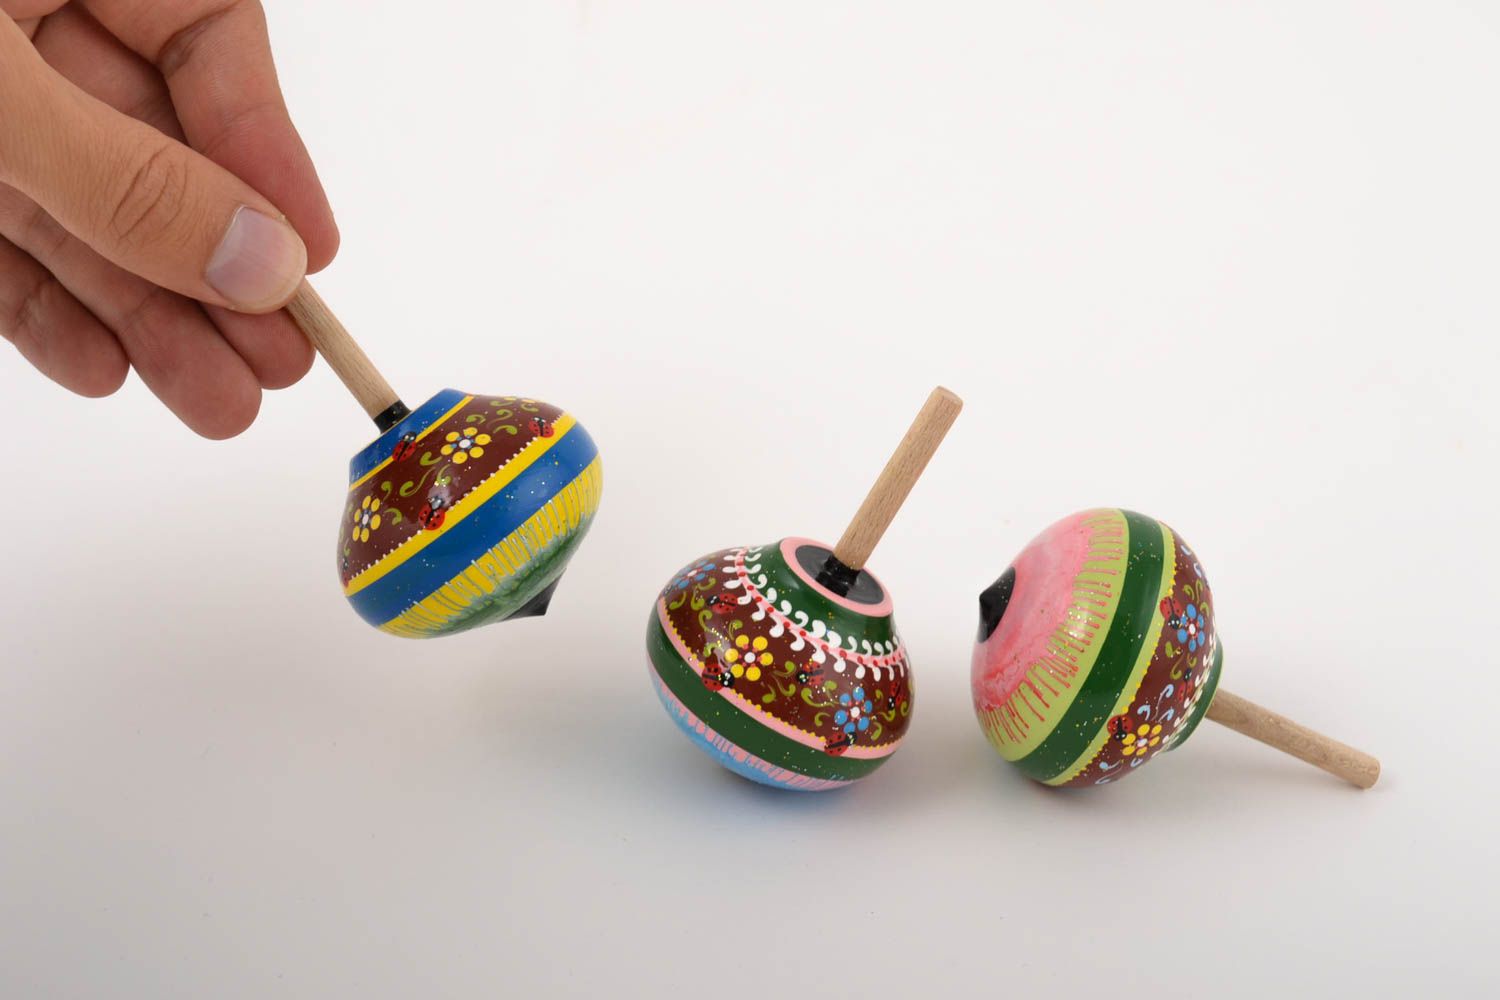 Детские юлы игрушки ручной работы игрушки из дерева с узорами набор 3 штуки фото 5